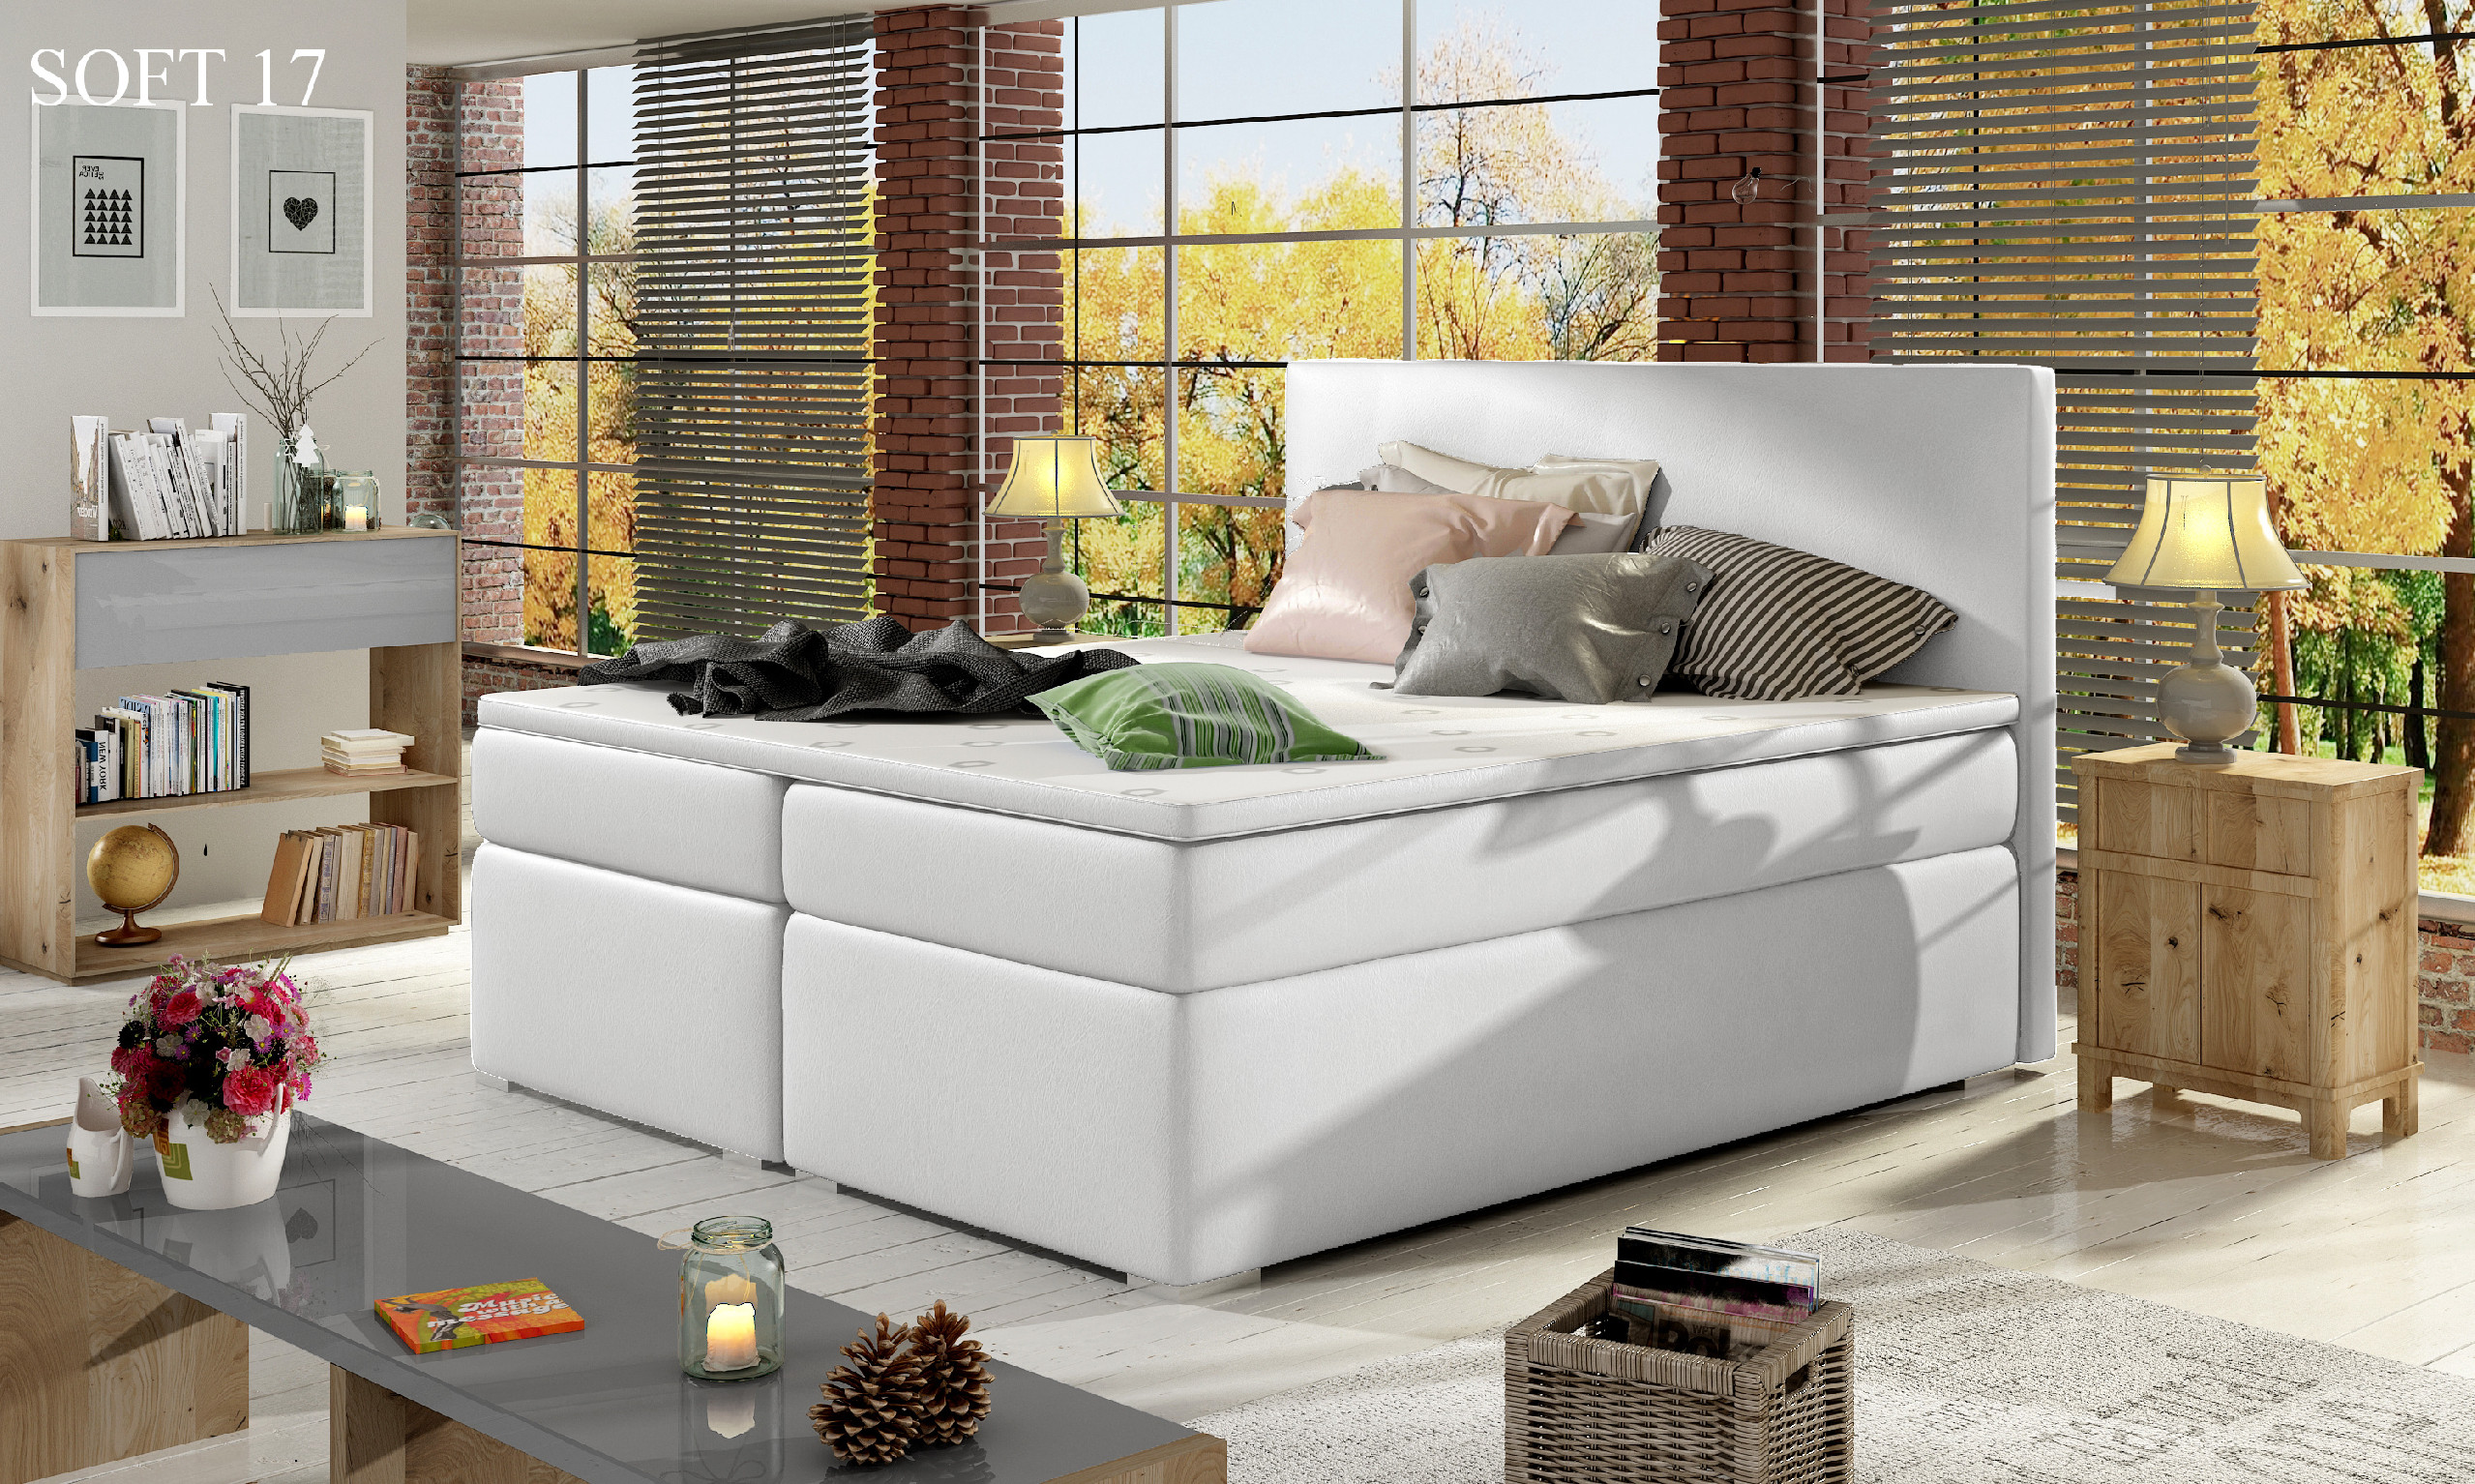 Čalouněná postel DIVALO Boxsprings 160 x 200 cm Provedení: Soft 17